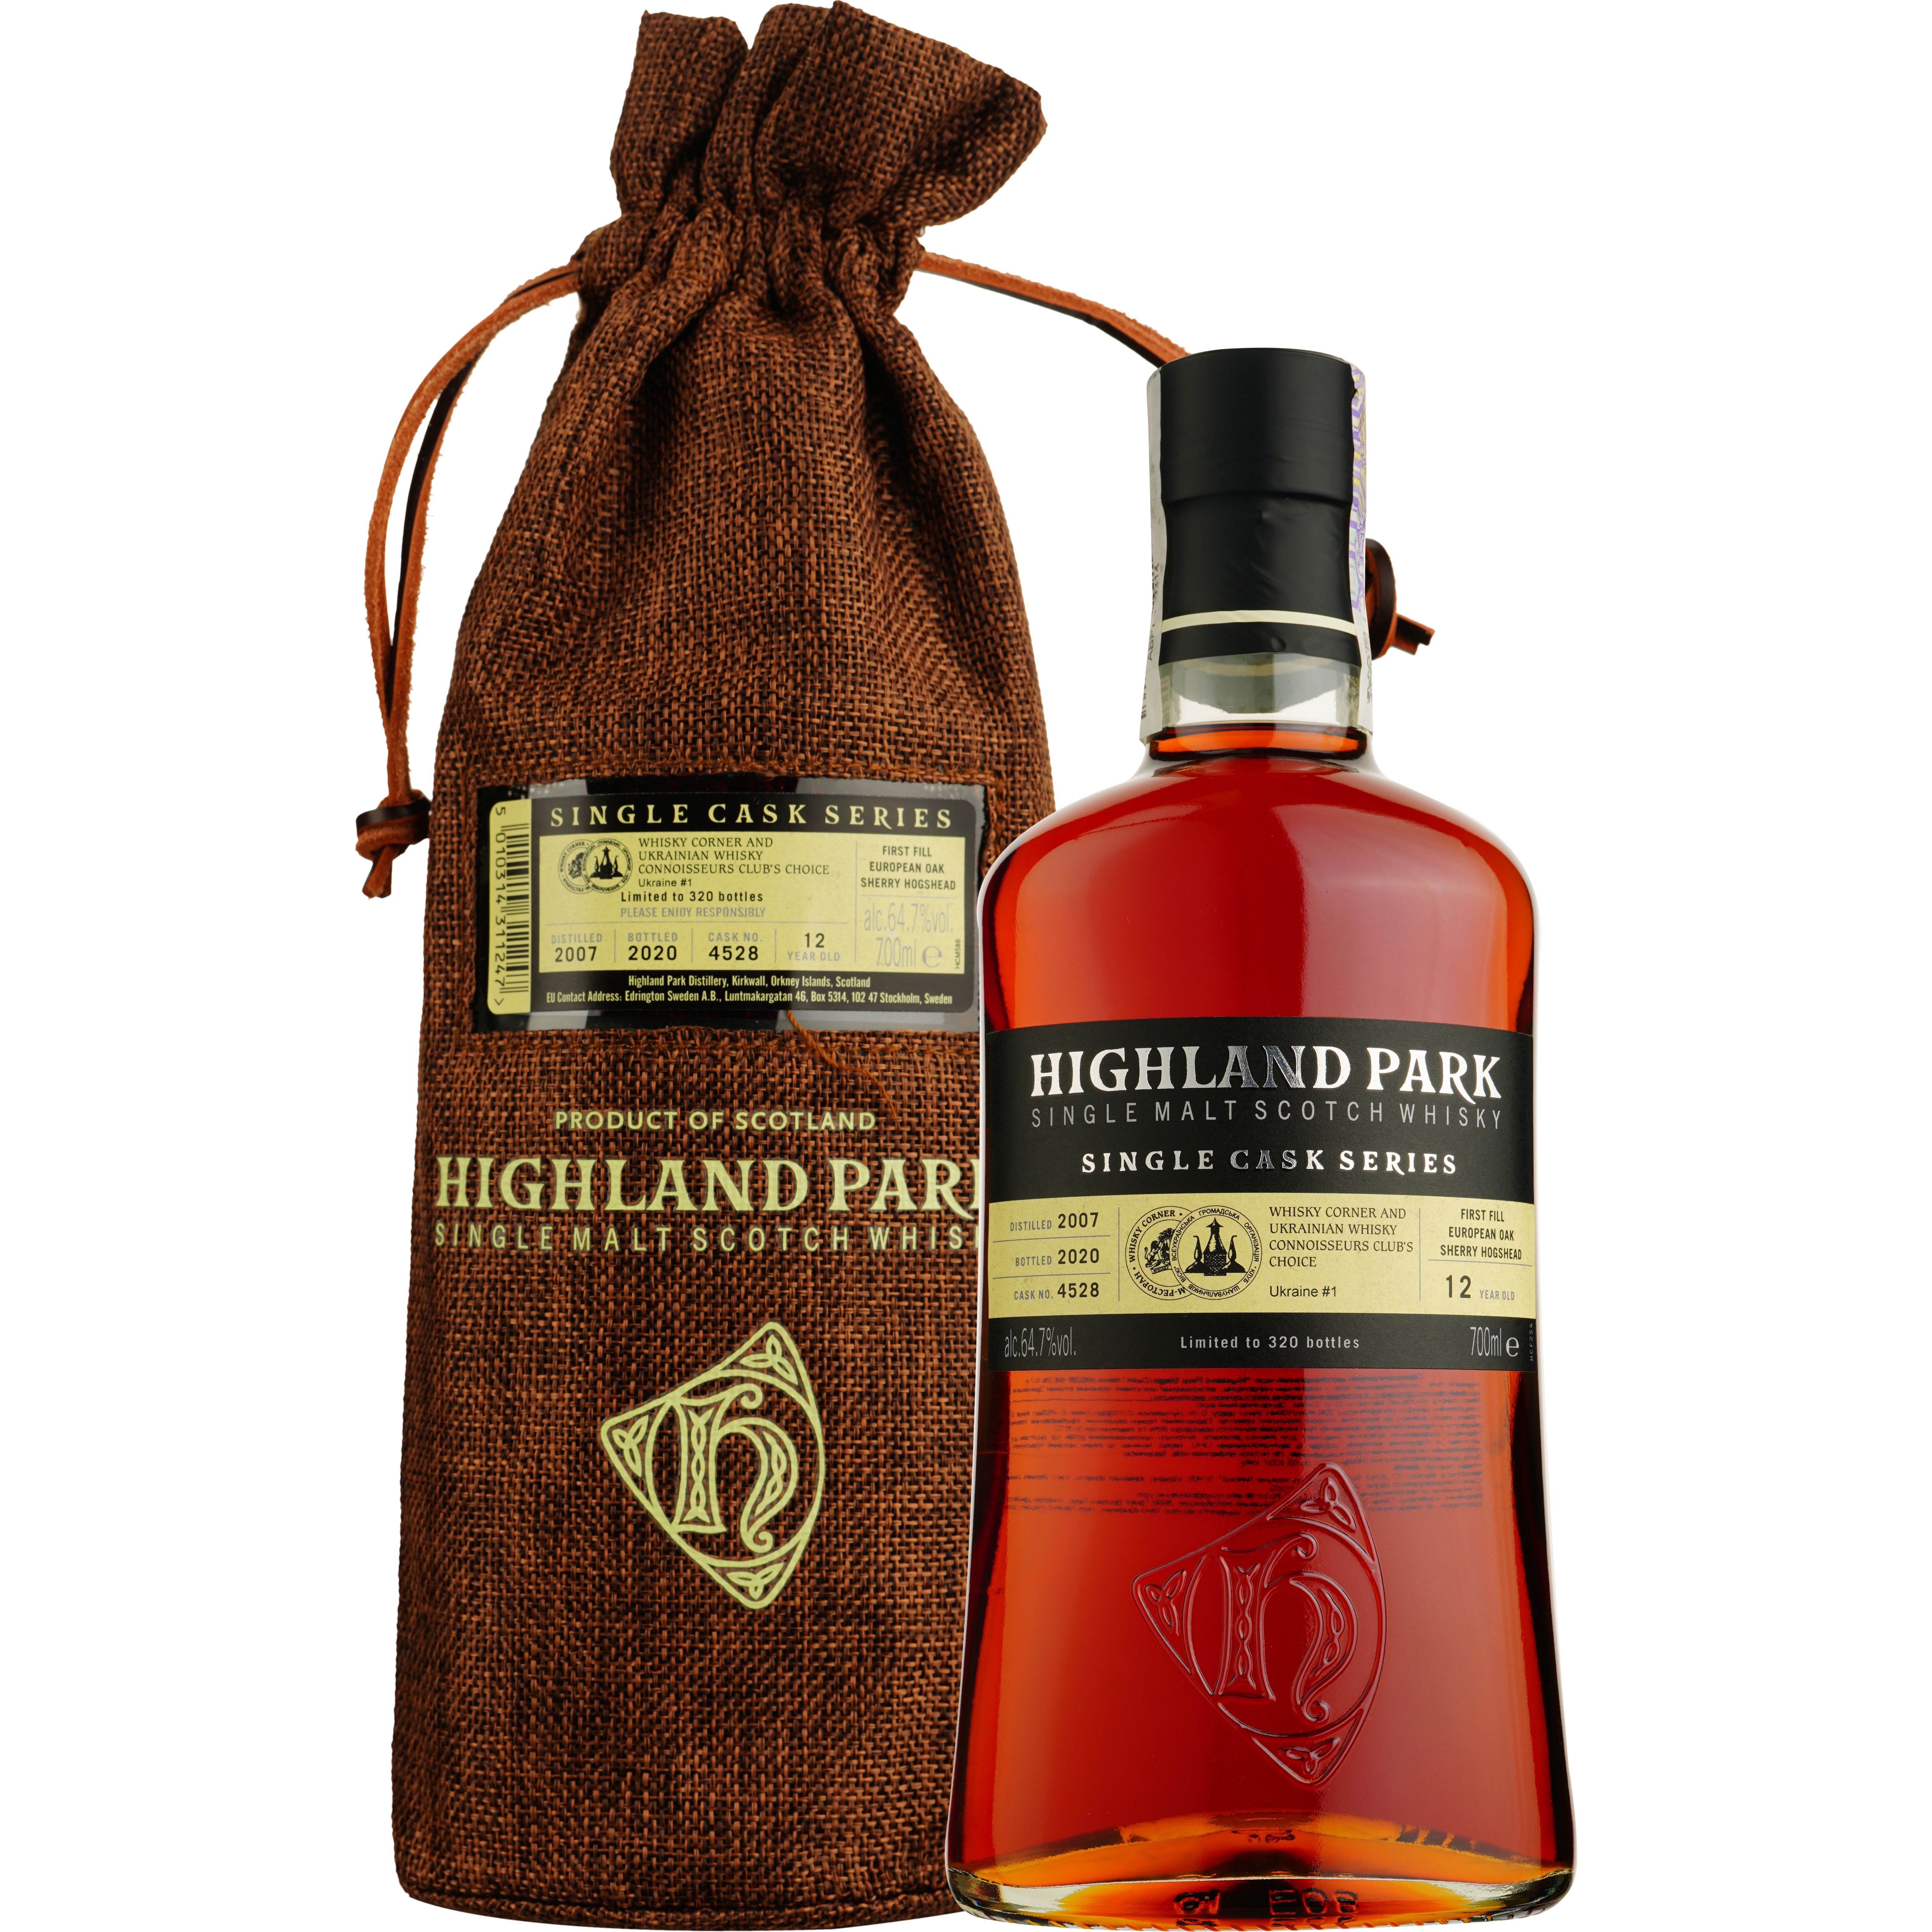 Віскі Highland Park 12 Years Old Ukraine #1 Single Malt Scotch Whisky, у подарунковій упаковці, 64,7%, 0,7 л - фото 1